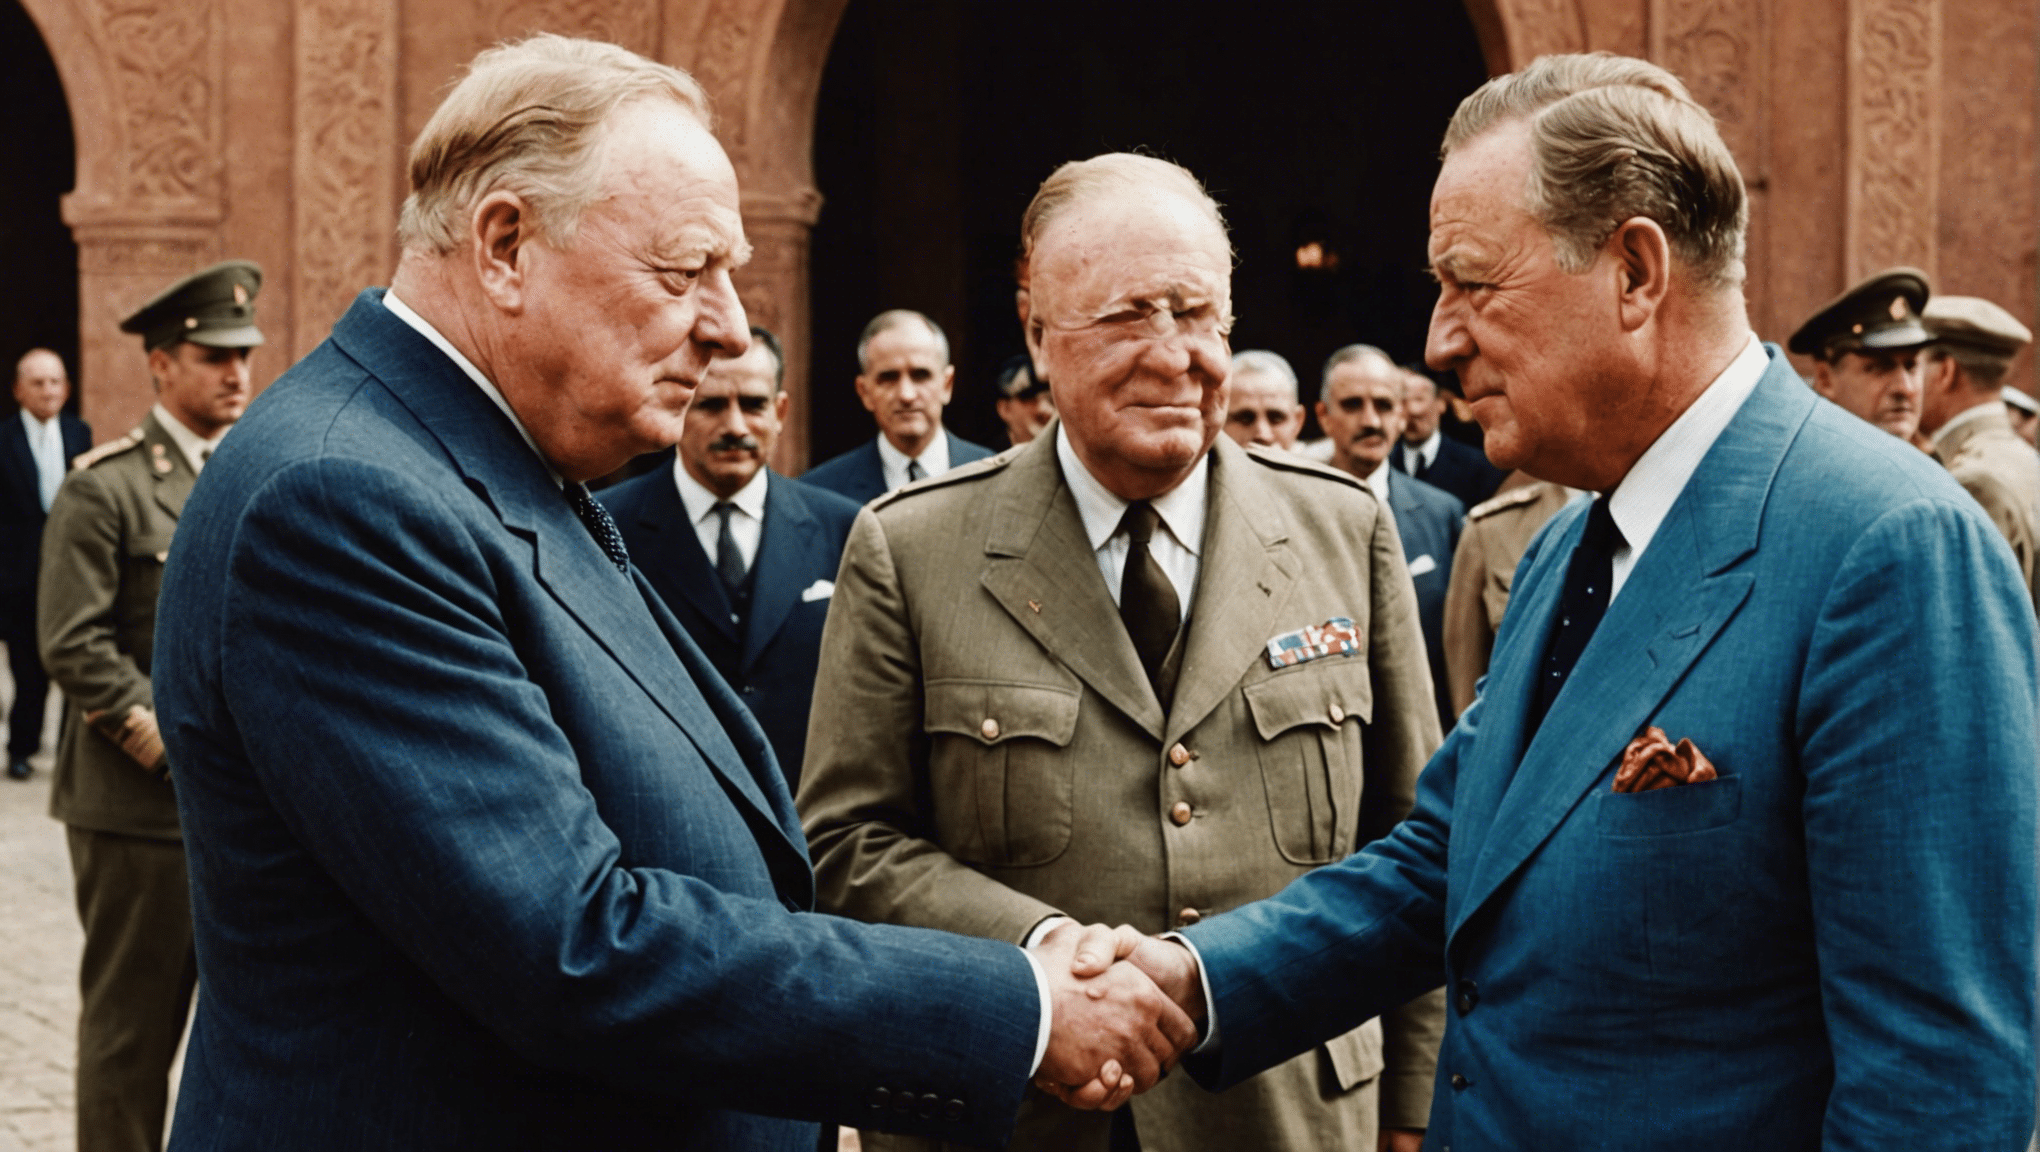 Churchill et Roosevelt se sont rencontrés pendant la Seconde Guerre mondiale à Marrakech, un moment emblématique de l'histoire qui a façonné le cours de la guerre et du monde. découvrez cette rencontre historique et sa signification.